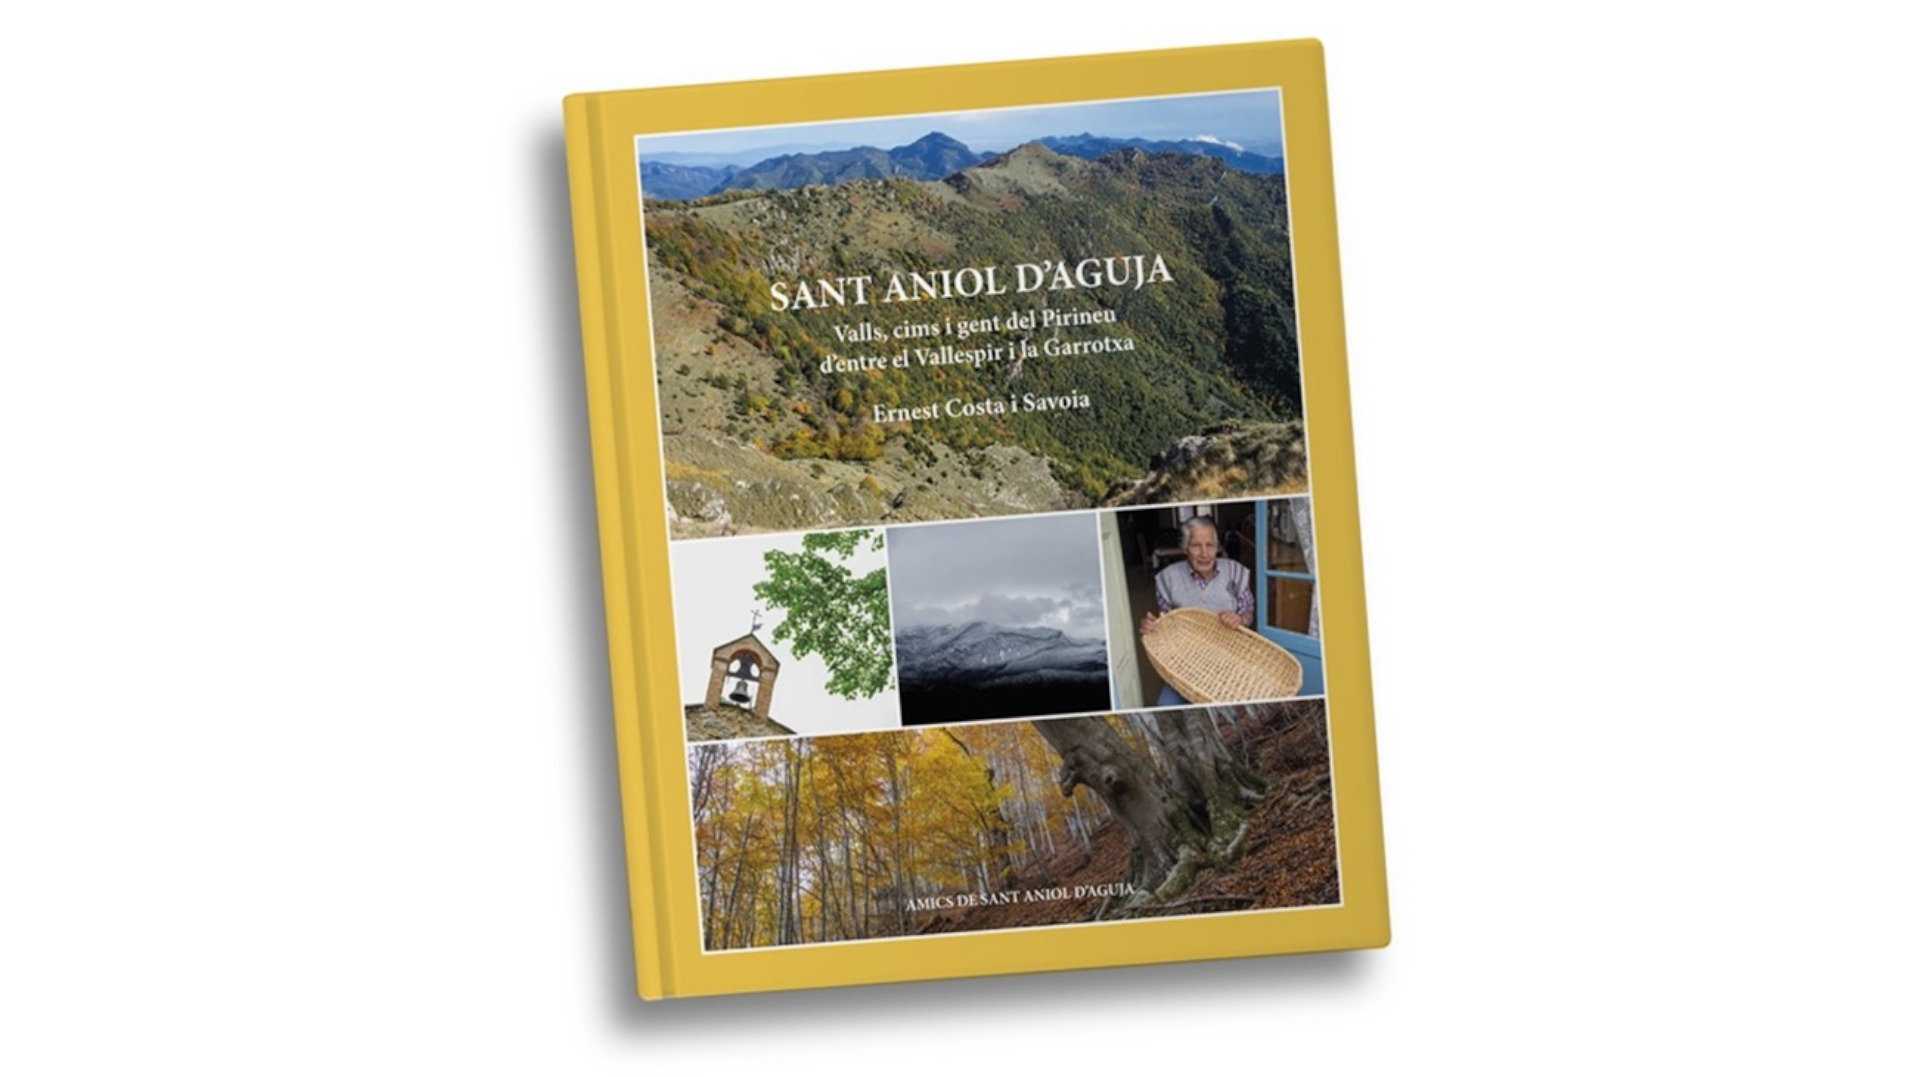 Presentació del llibre SANT ANIOL D’AGUJA: Valls, cims i gent del Pirineu d’entre el Vallespir i la Garrotxa, d’Ernest Costa